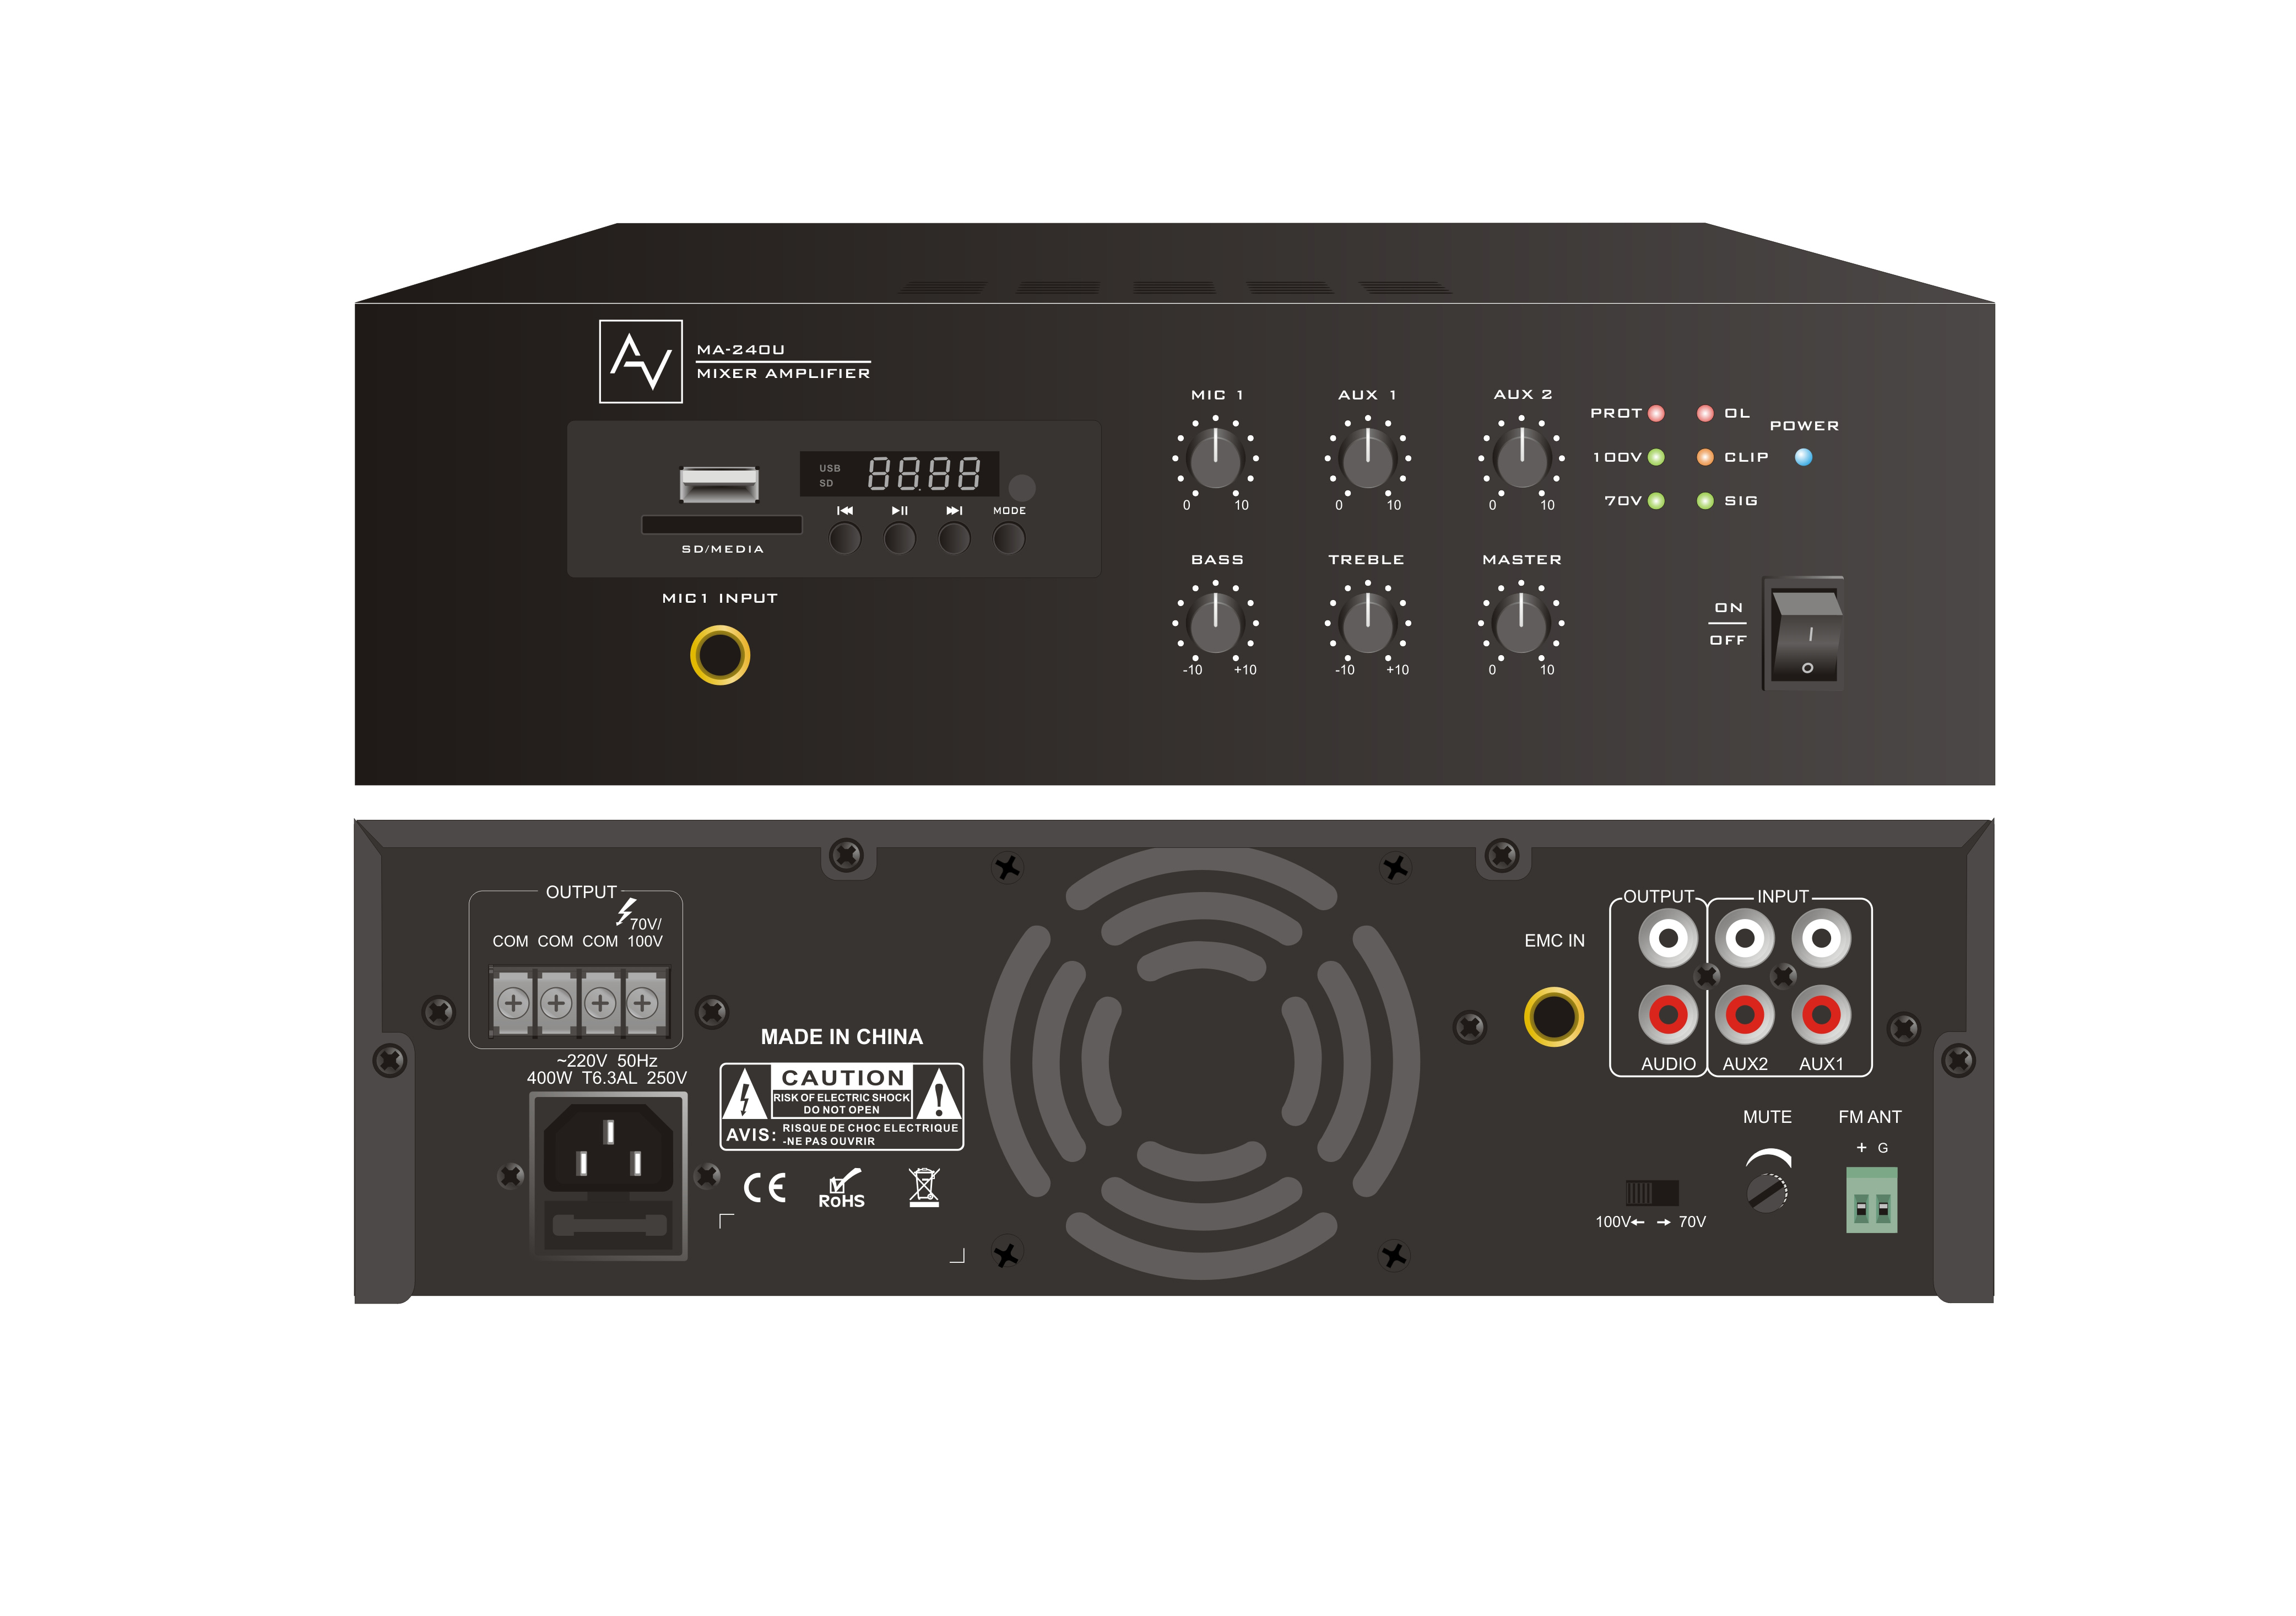 Mixer Amplifier 240W AV MA-240U